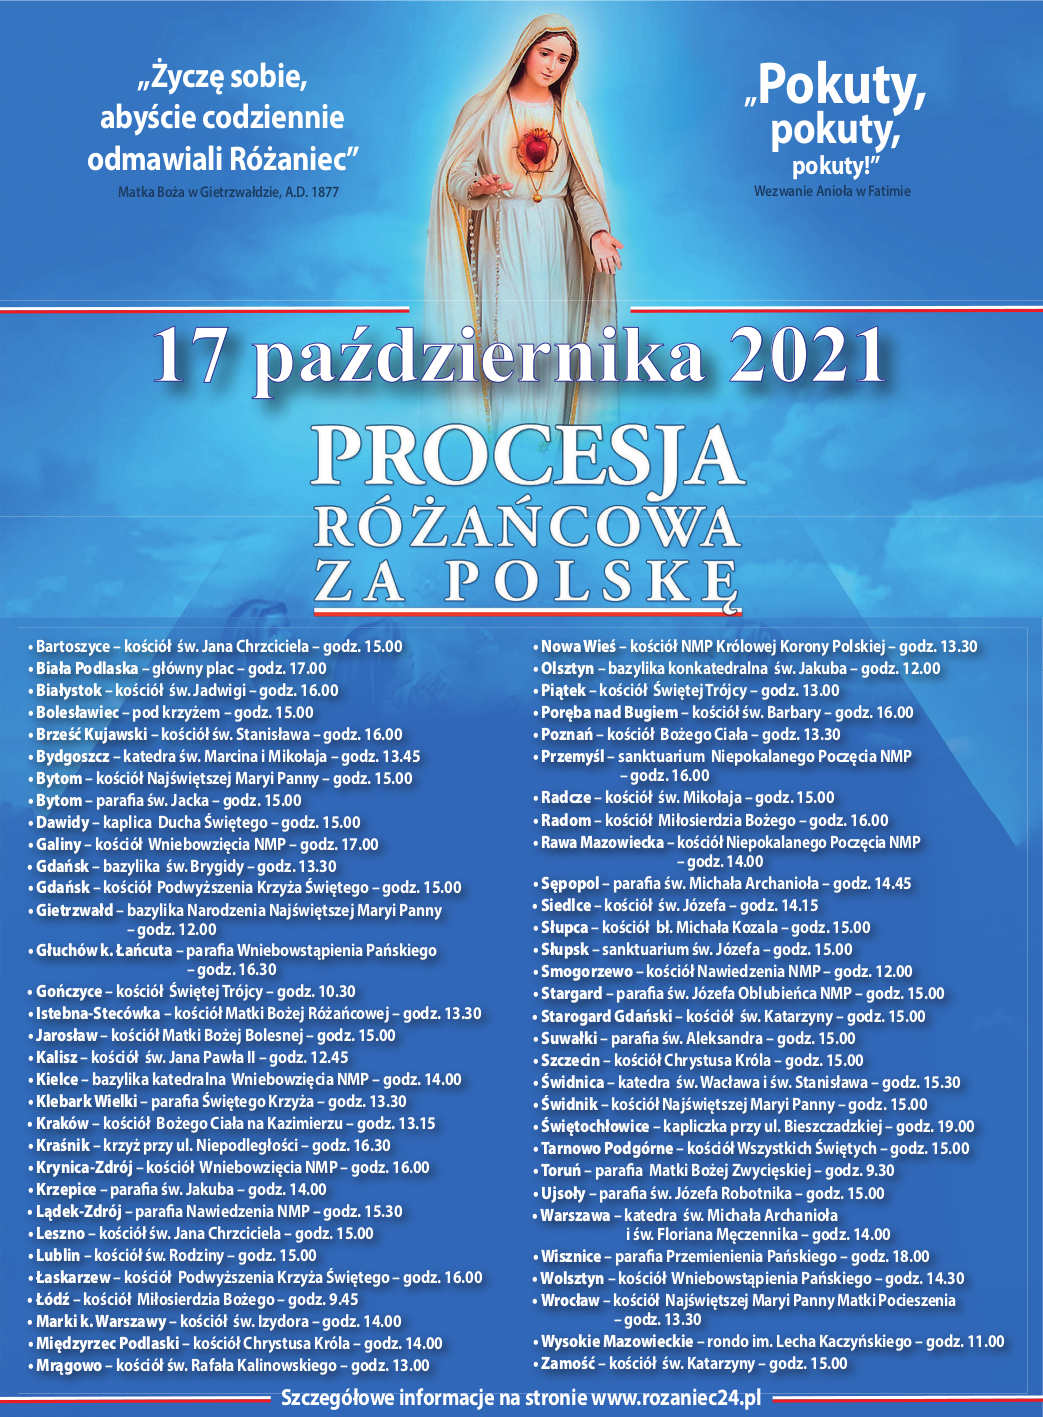 17 Październik 2021 Procesje Różańcowe w Polskich Miastach